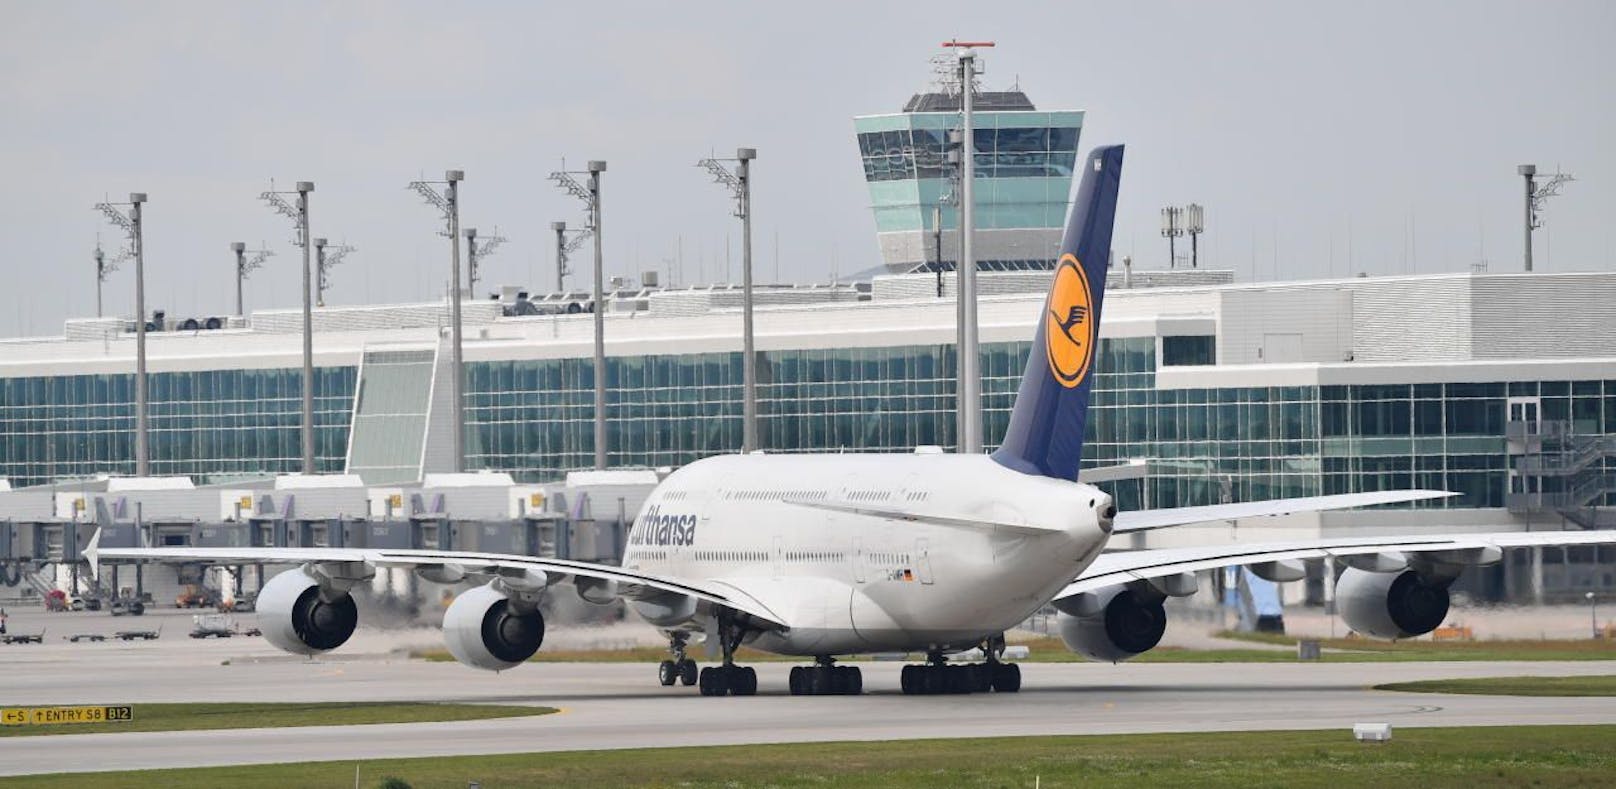 Airbus kündigte an, dass der Bau des A380 eingestellt wird. Das wird laut FACC keine Auswirkungen auf den Flugzeugzulieferer aus dem Innviertel haben.